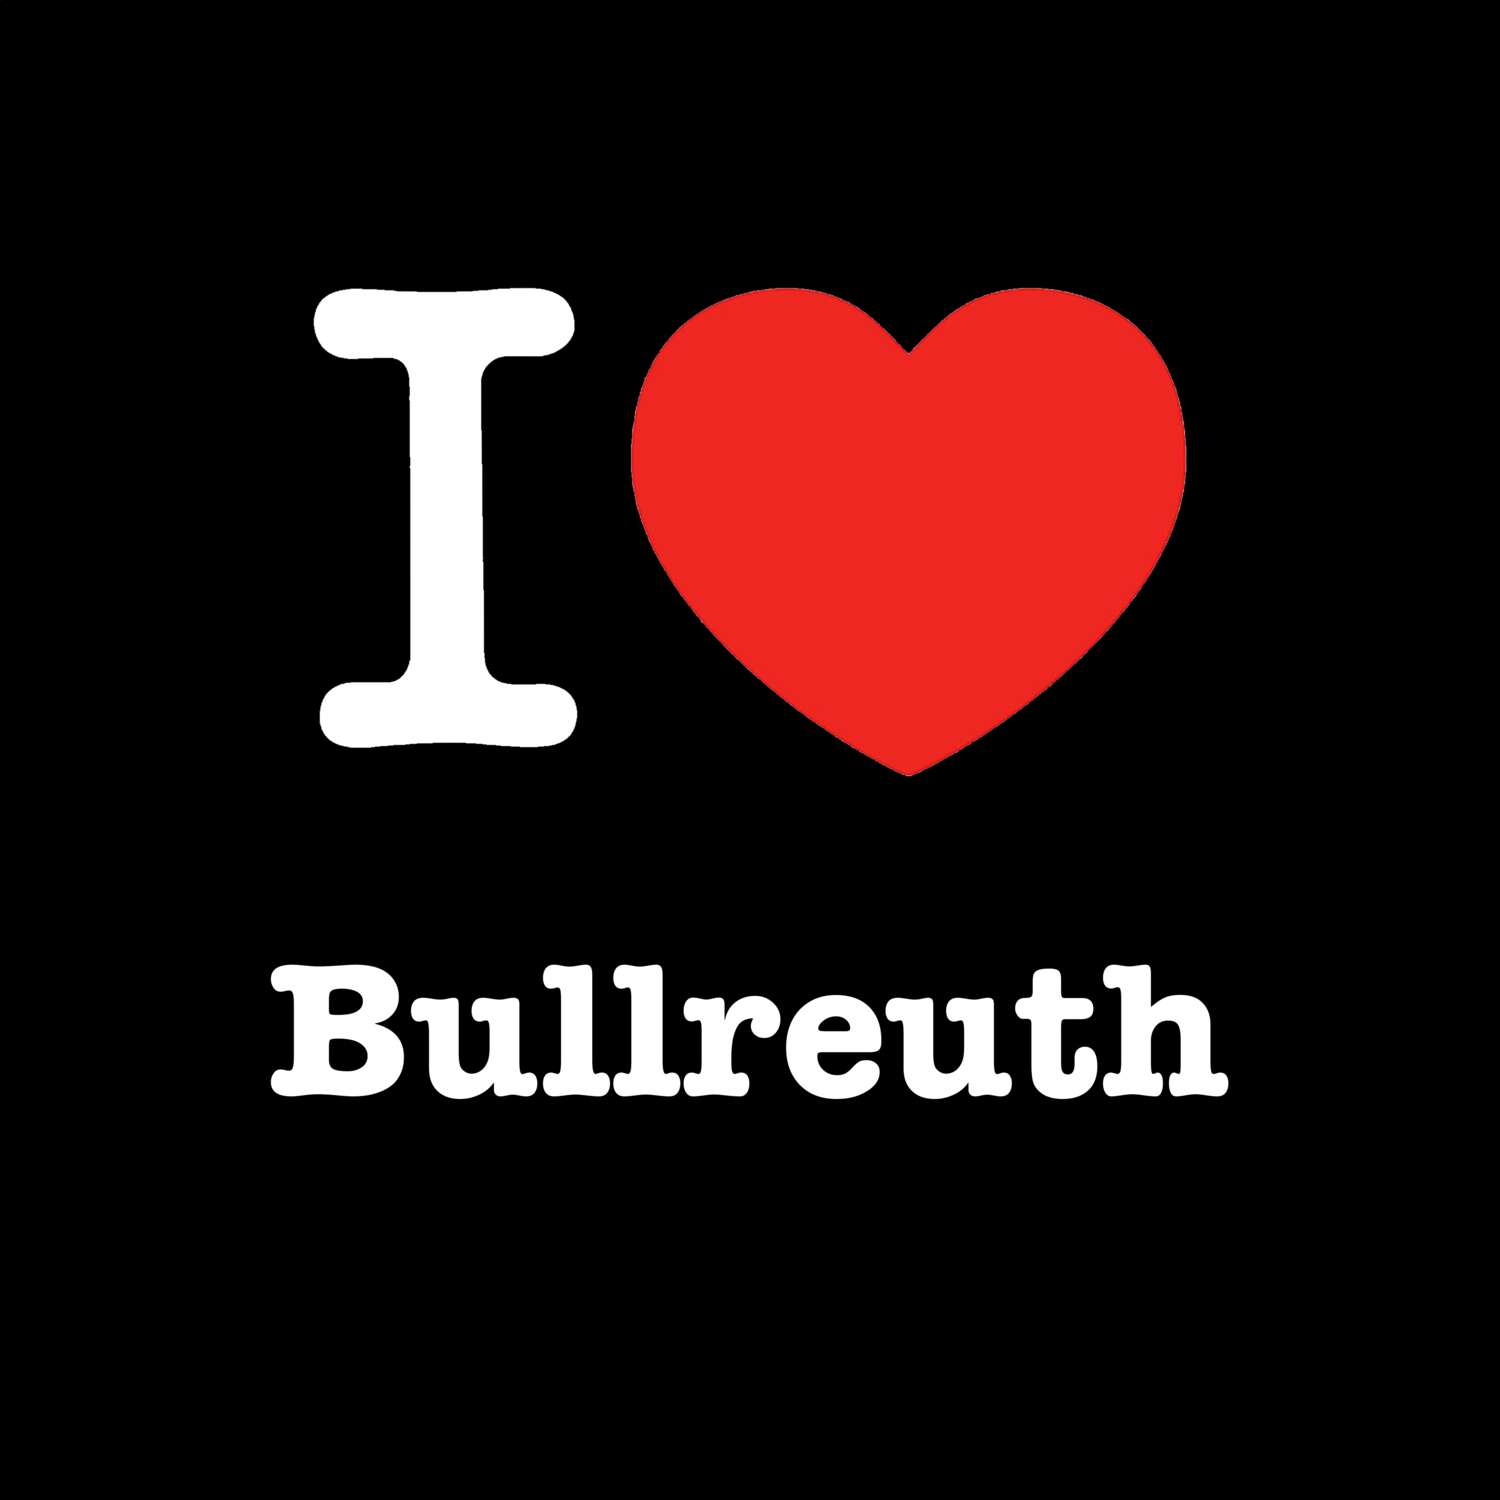 Bullreuth T-Shirt »I love«